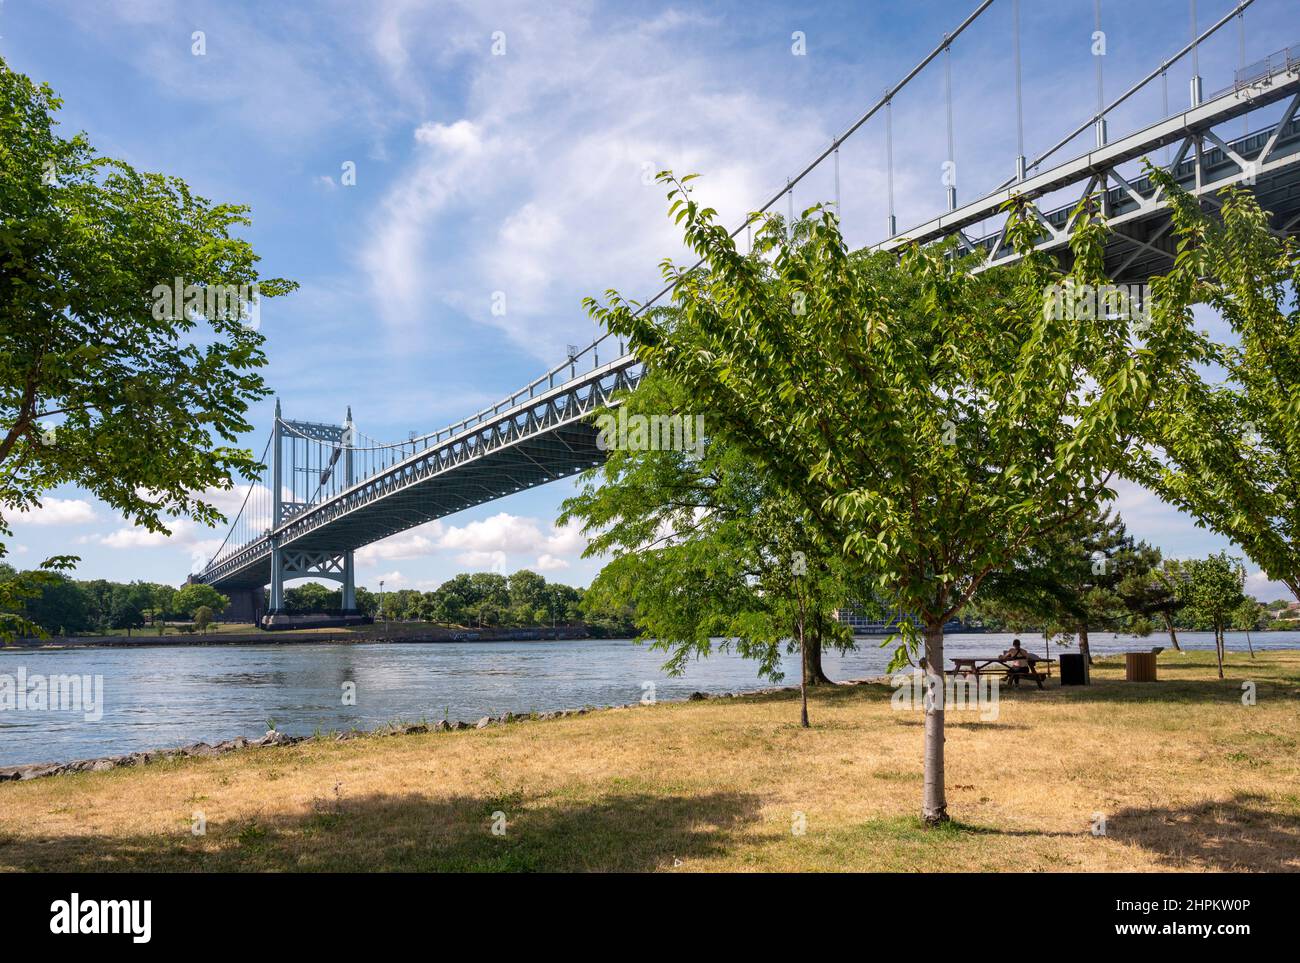 Die Robert F. Kennedy Bridge, früher und heute noch allgemein als Triborough Bridge bezeichnet, verbindet die Bezirke Manhattan, Queens und die Bronx Stockfoto